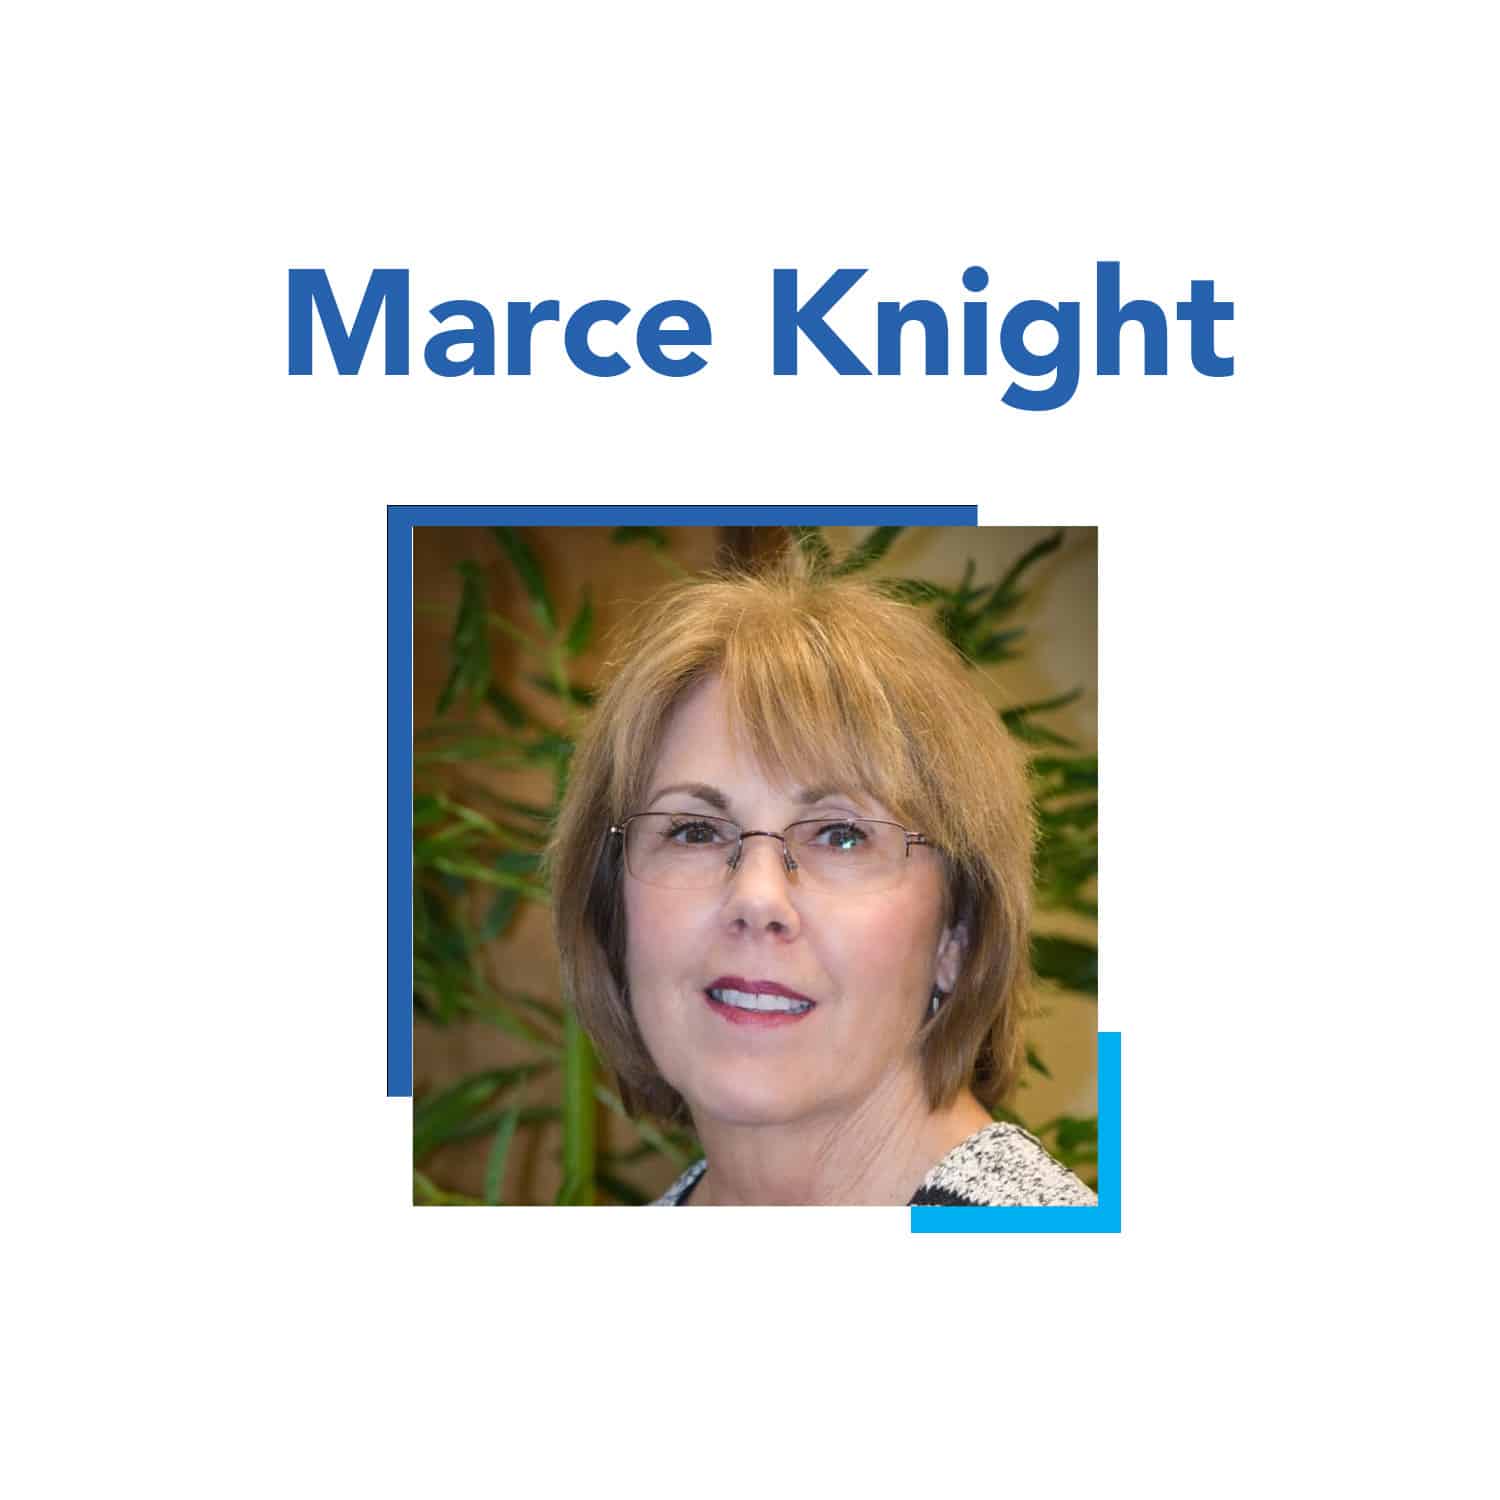 Marce Knight